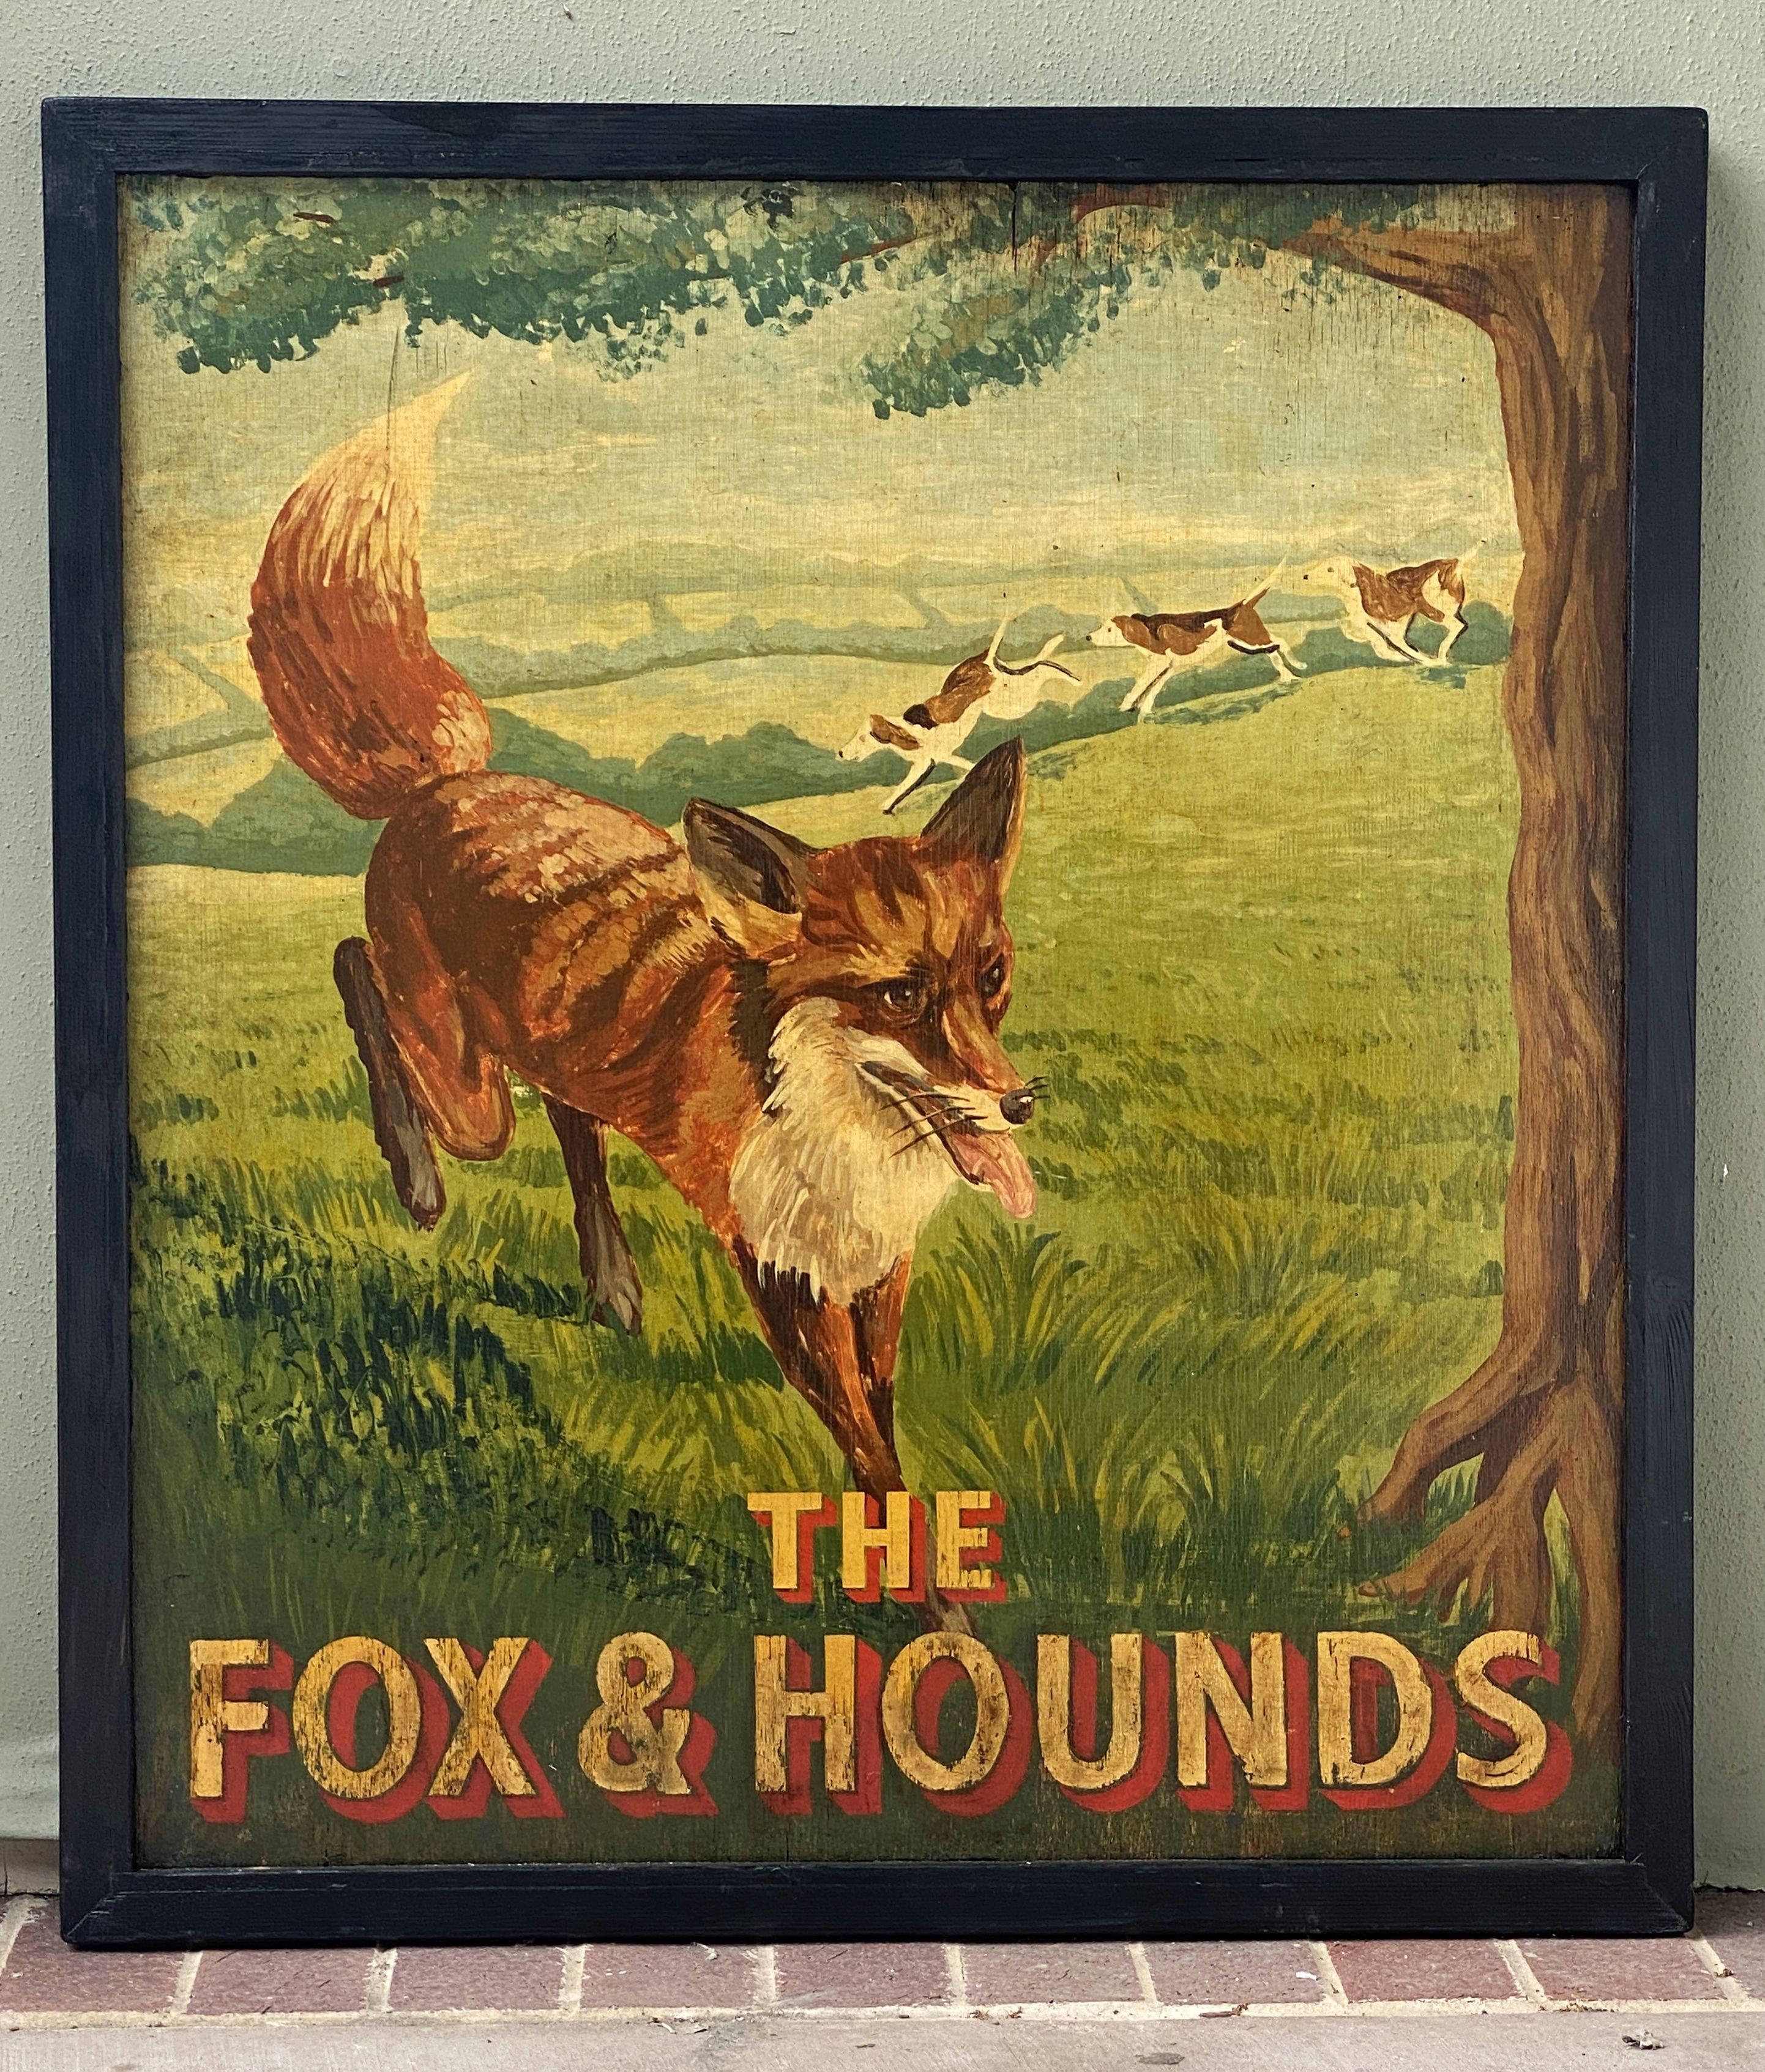 Ein authentisches englisches Pub-Schild (einseitig) mit dem Bild eines Fuchses, der von drei Hunden gejagt wird, mit dem Titel: The Fox & Hounds

Ein sehr schönes Beispiel für Vintage-Werbegrafik und bereit für die Anzeige.